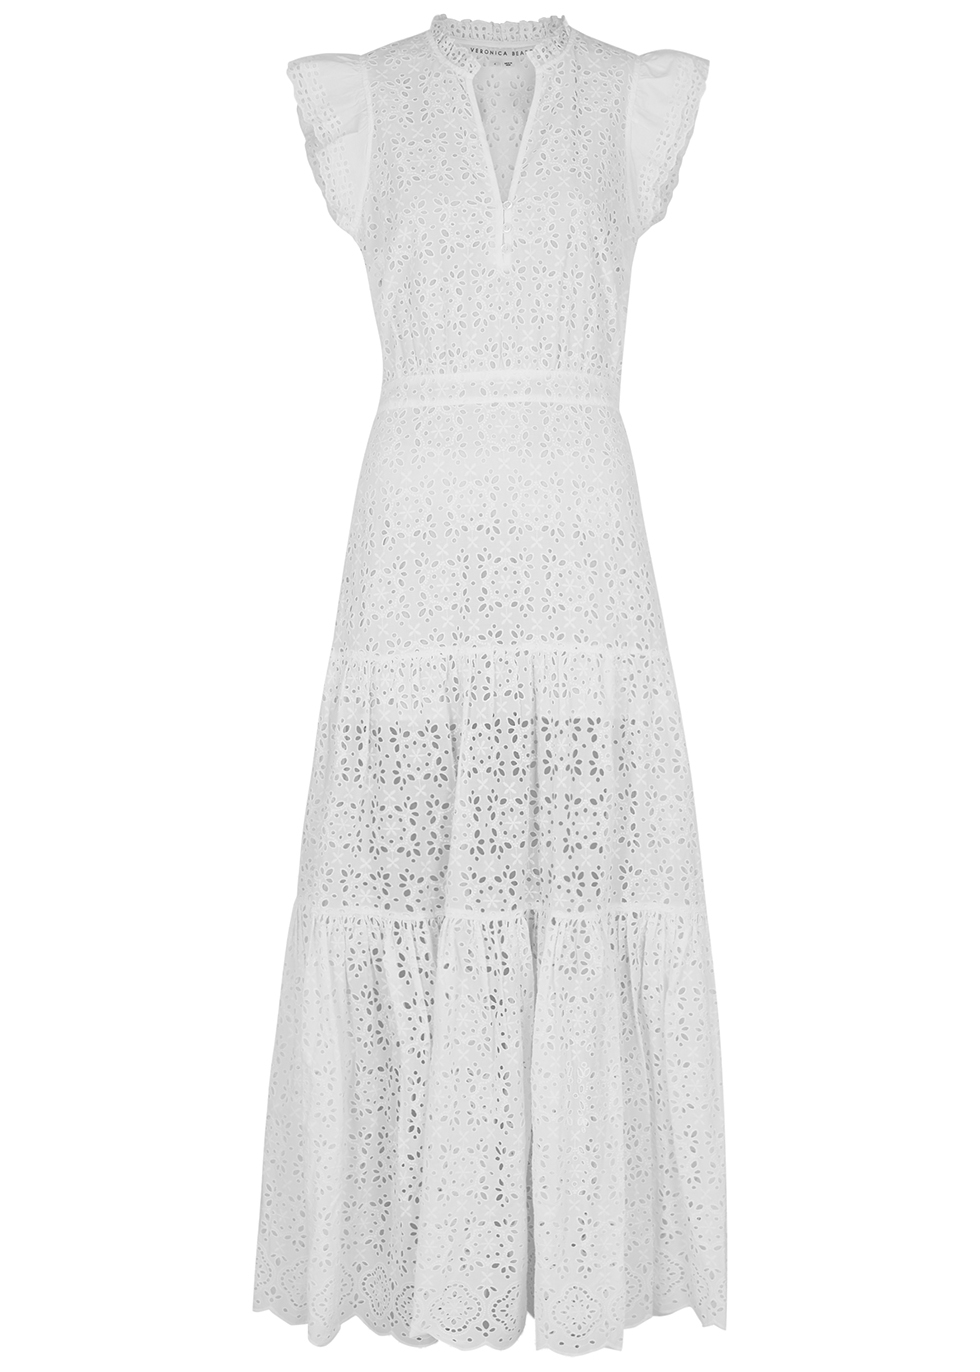 Satori white broderie anglaise cotton maxi dress